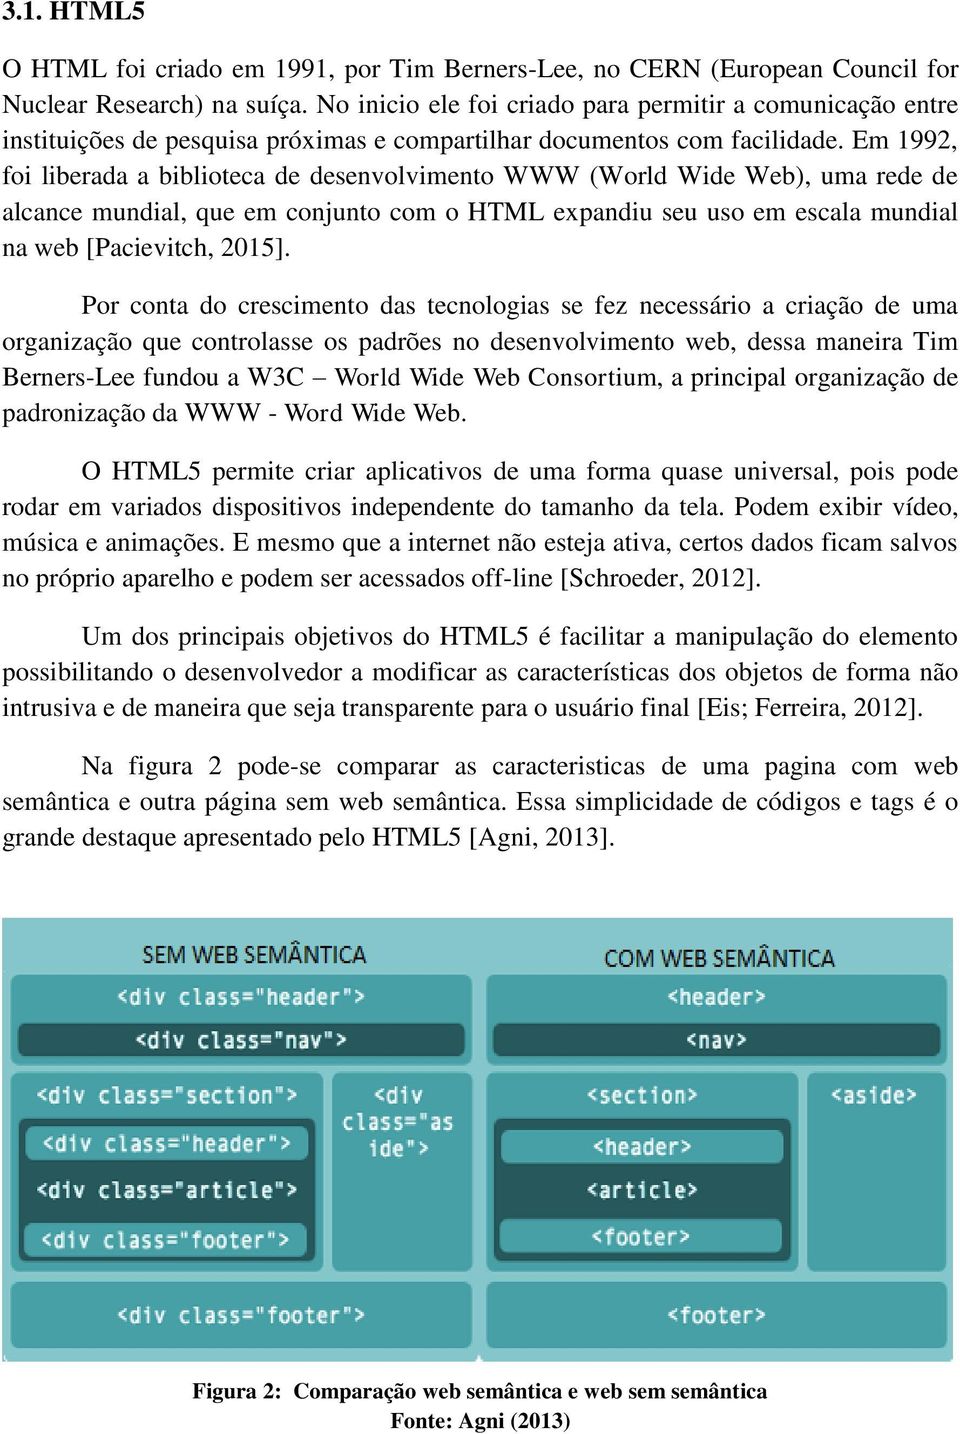 Em 1992, foi liberada a biblioteca de desenvolvimento WWW (World Wide Web), uma rede de alcance mundial, que em conjunto com o HTML expandiu seu uso em escala mundial na web [Pacievitch, 2015].